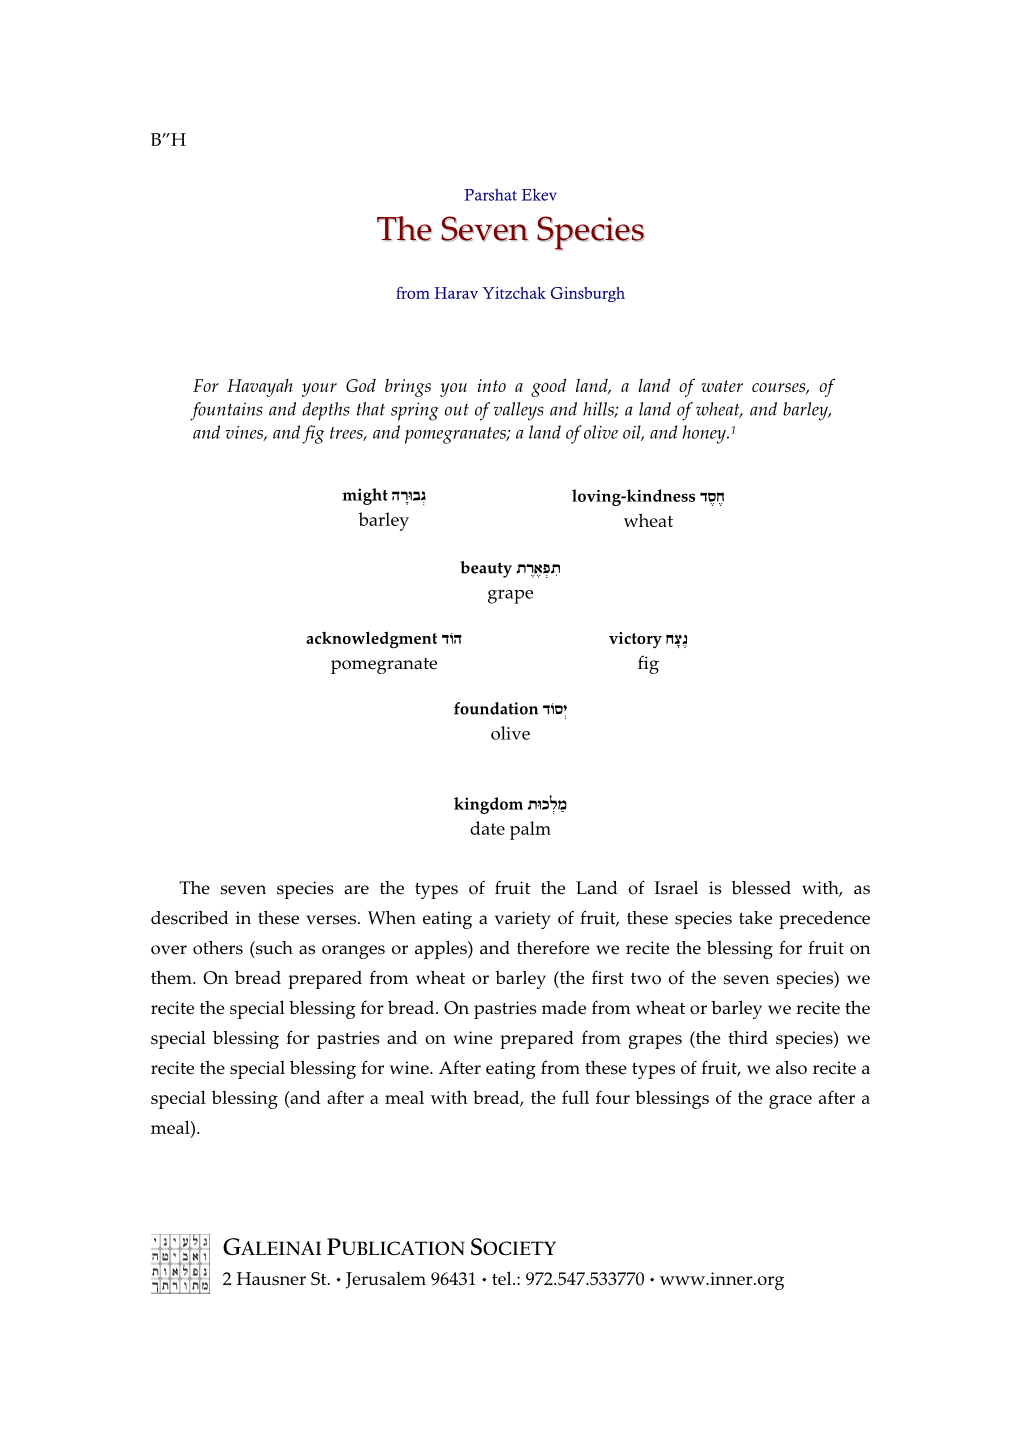 The Seven Species